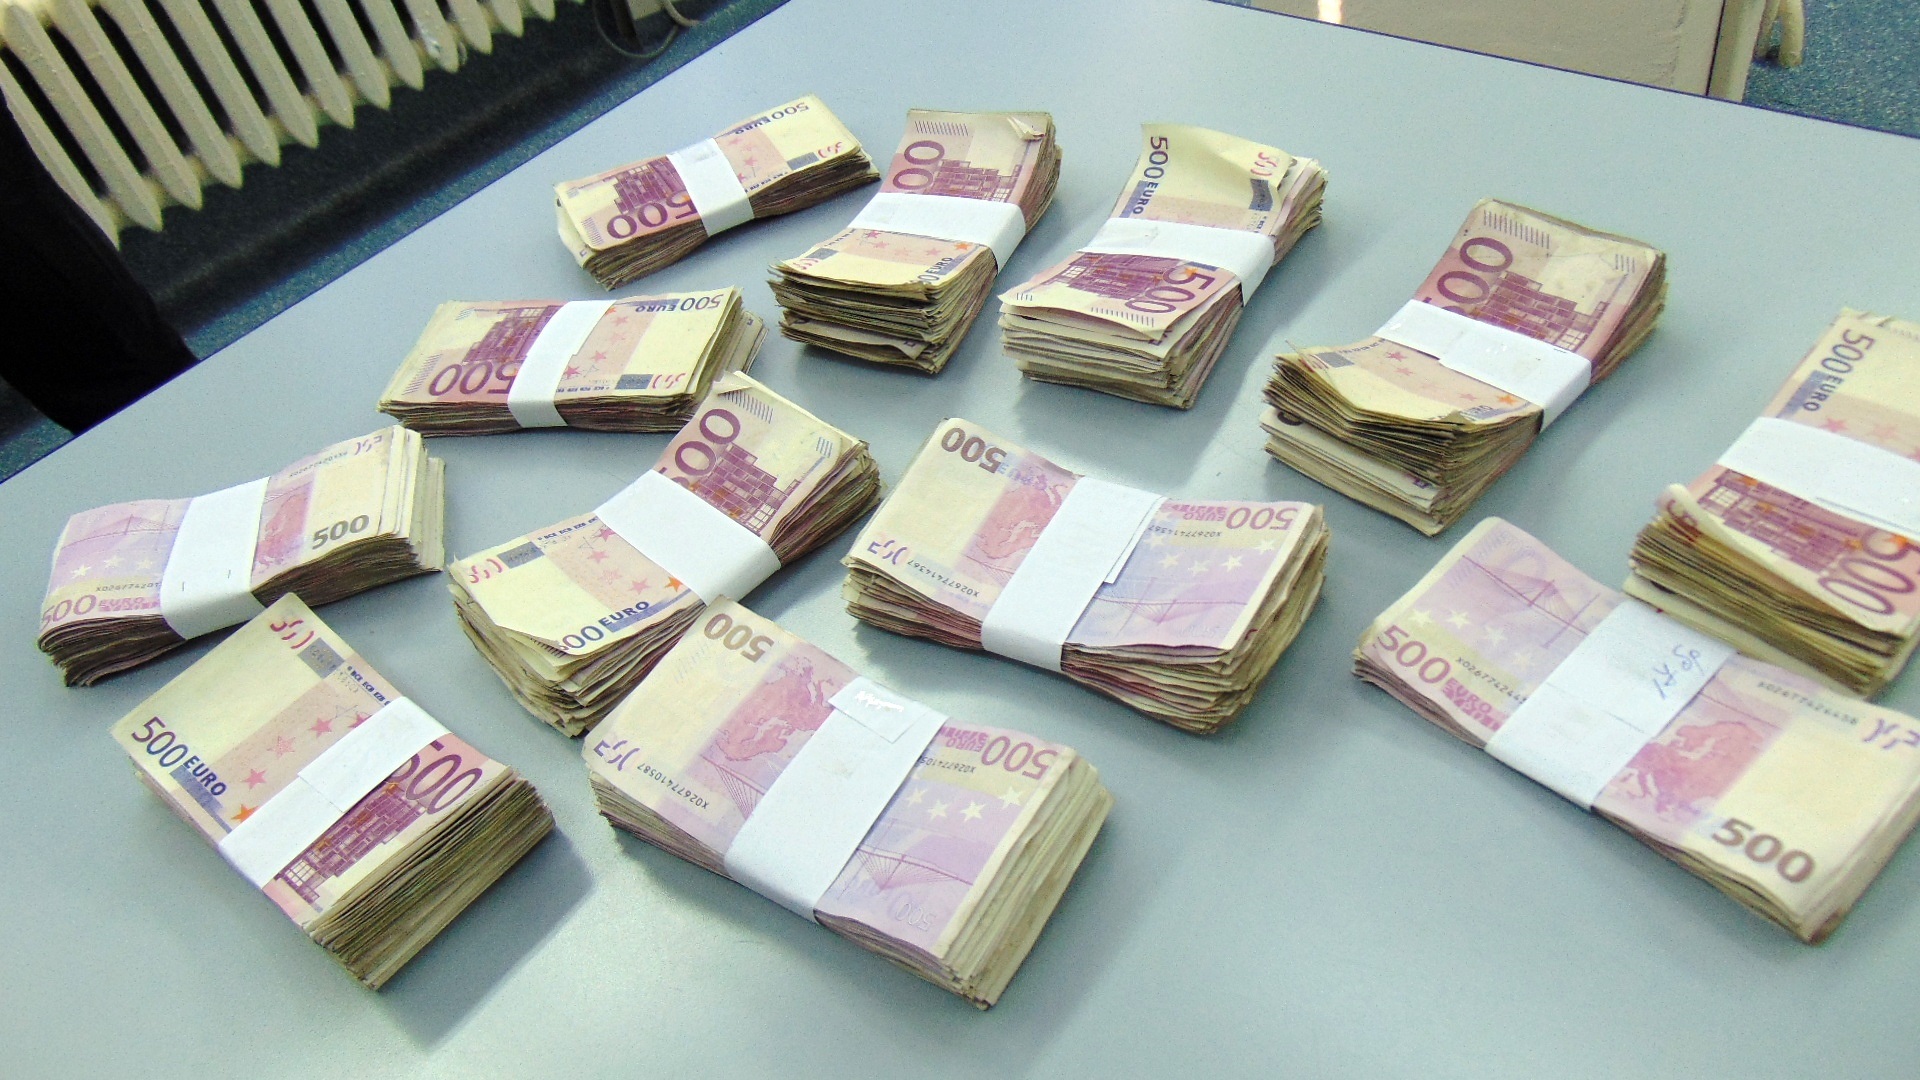 Листове с напечатани неистински банкноти евро на обща стойност 12 млн. евро съхнат в момента в заседателната зала на полицията в Пловдив. Общо 14 млн в готов вид и заготовки са откритите количества, които водят следи към разкрита вече печатница в Първомай. При акцията са хванати и незаконни оръжия, откраднати от магазин в Хасково.